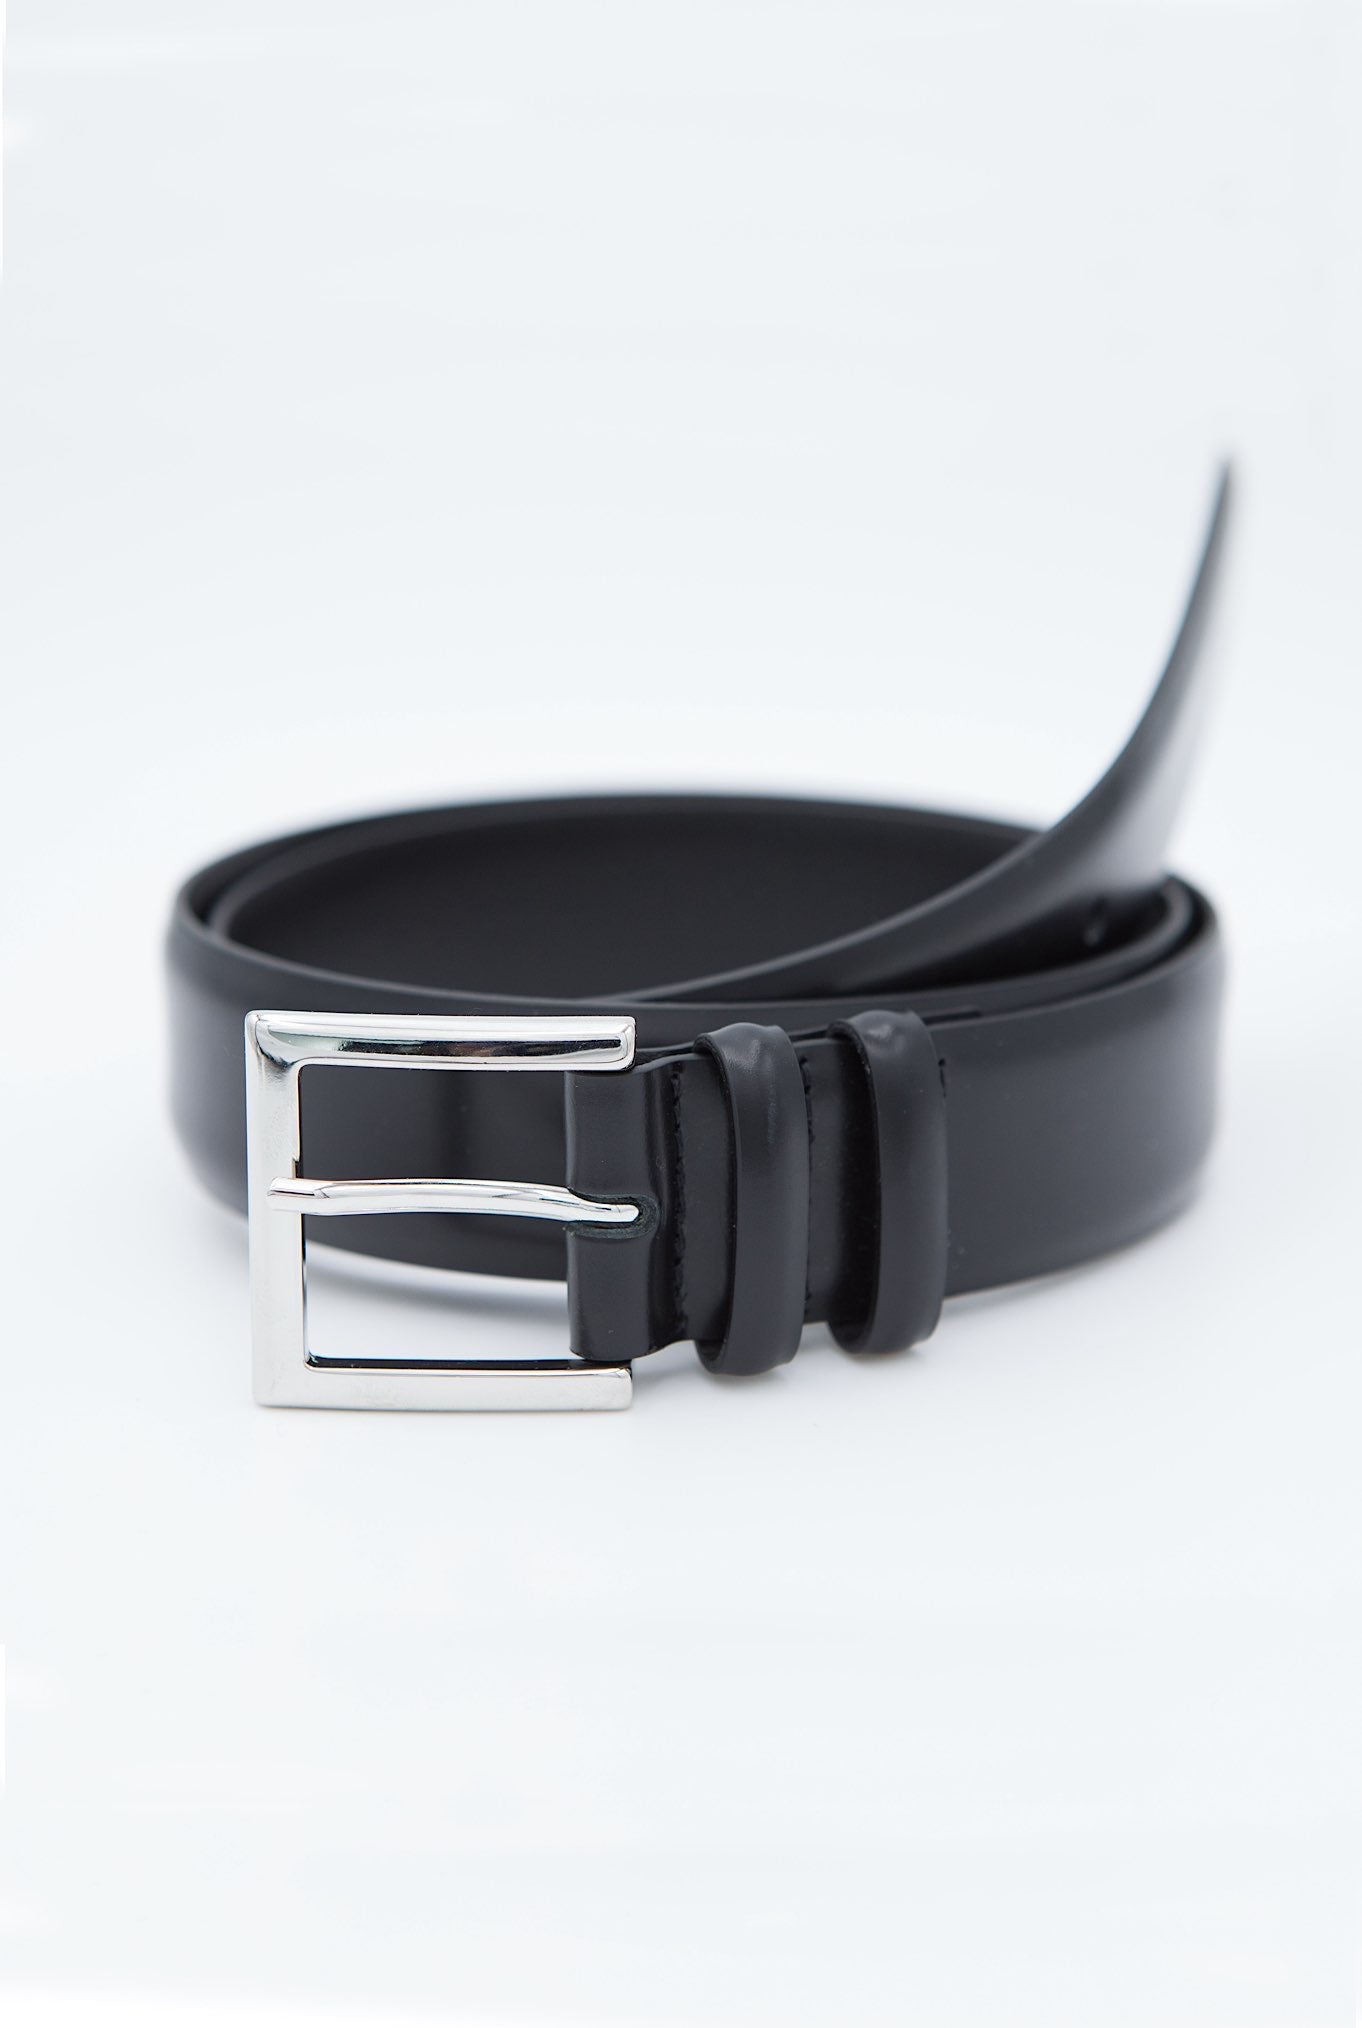 ORCIANI Black Leather Belt